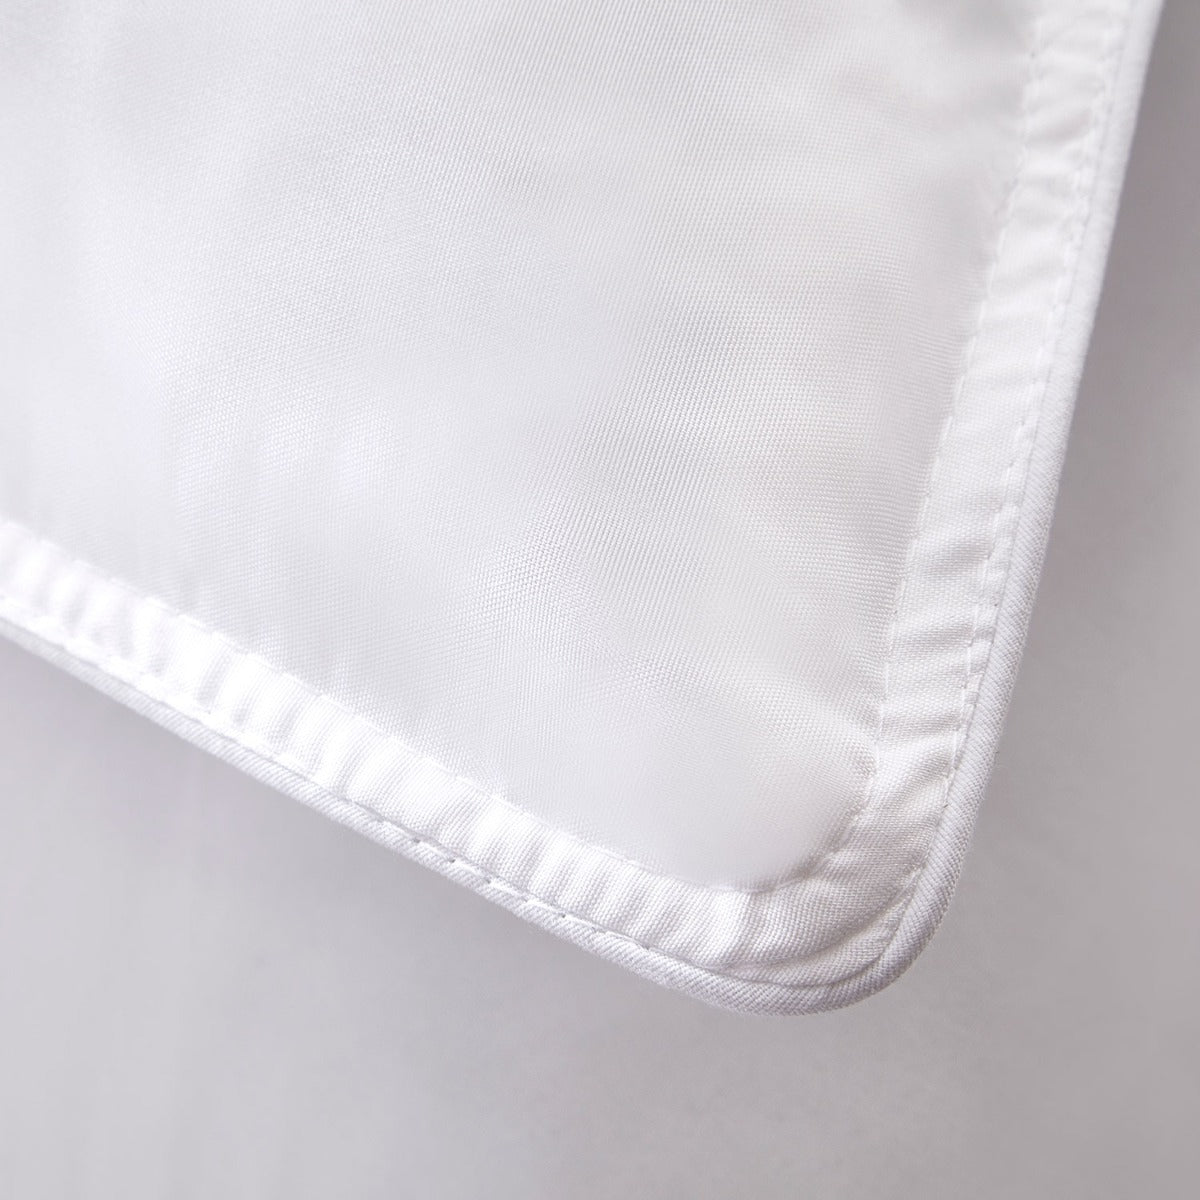 Soft Like Silk Pillow Pair - Medium Support